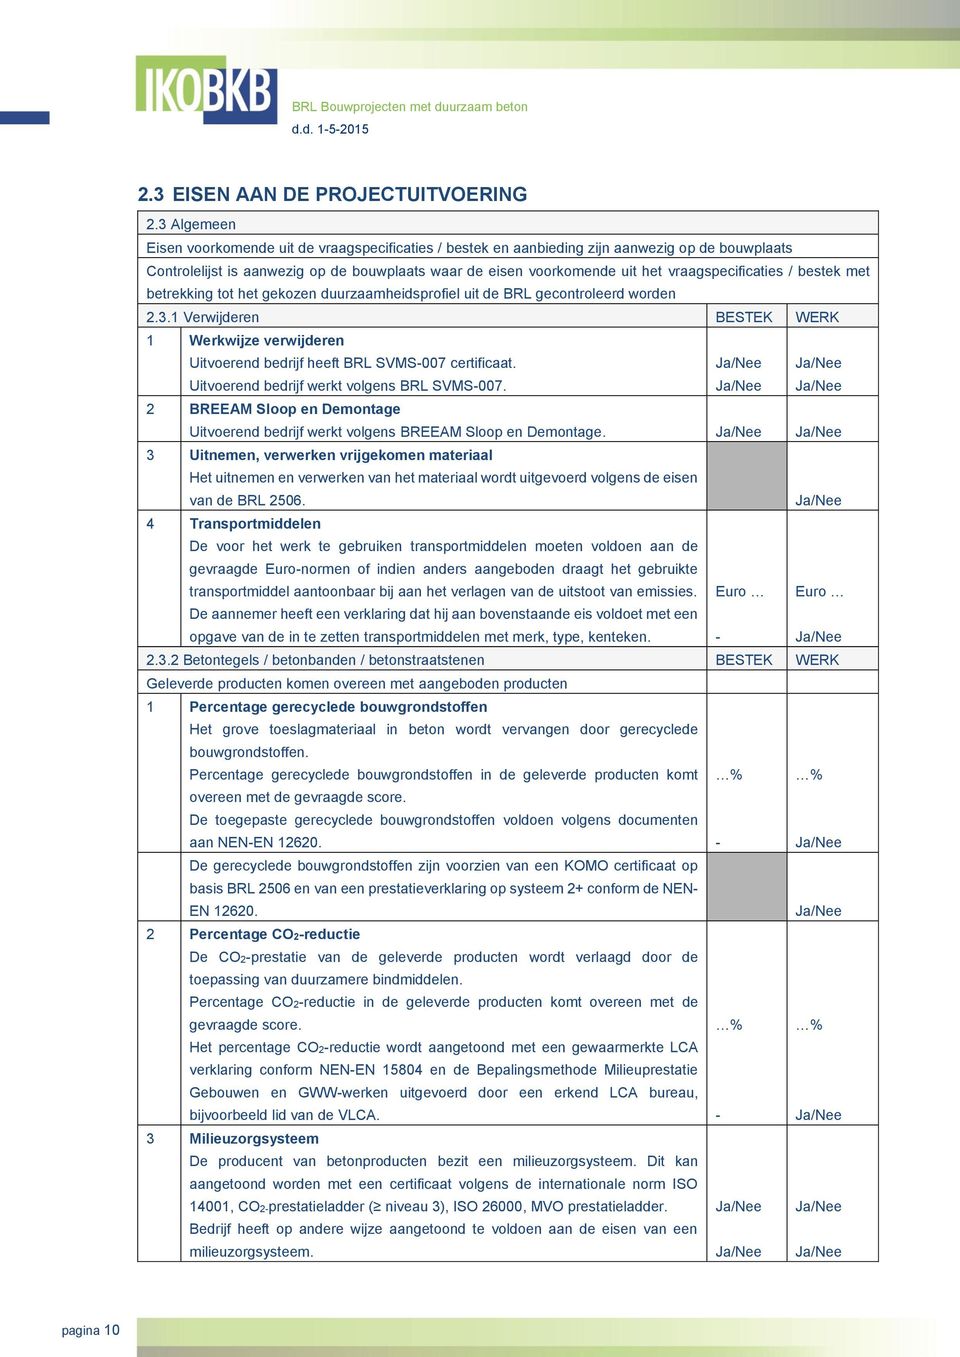 vraagspecificaties / bestek met betrekking tot het gekozen duurzaamheidsprofiel uit de BRL gecontroleerd worden 2.3.